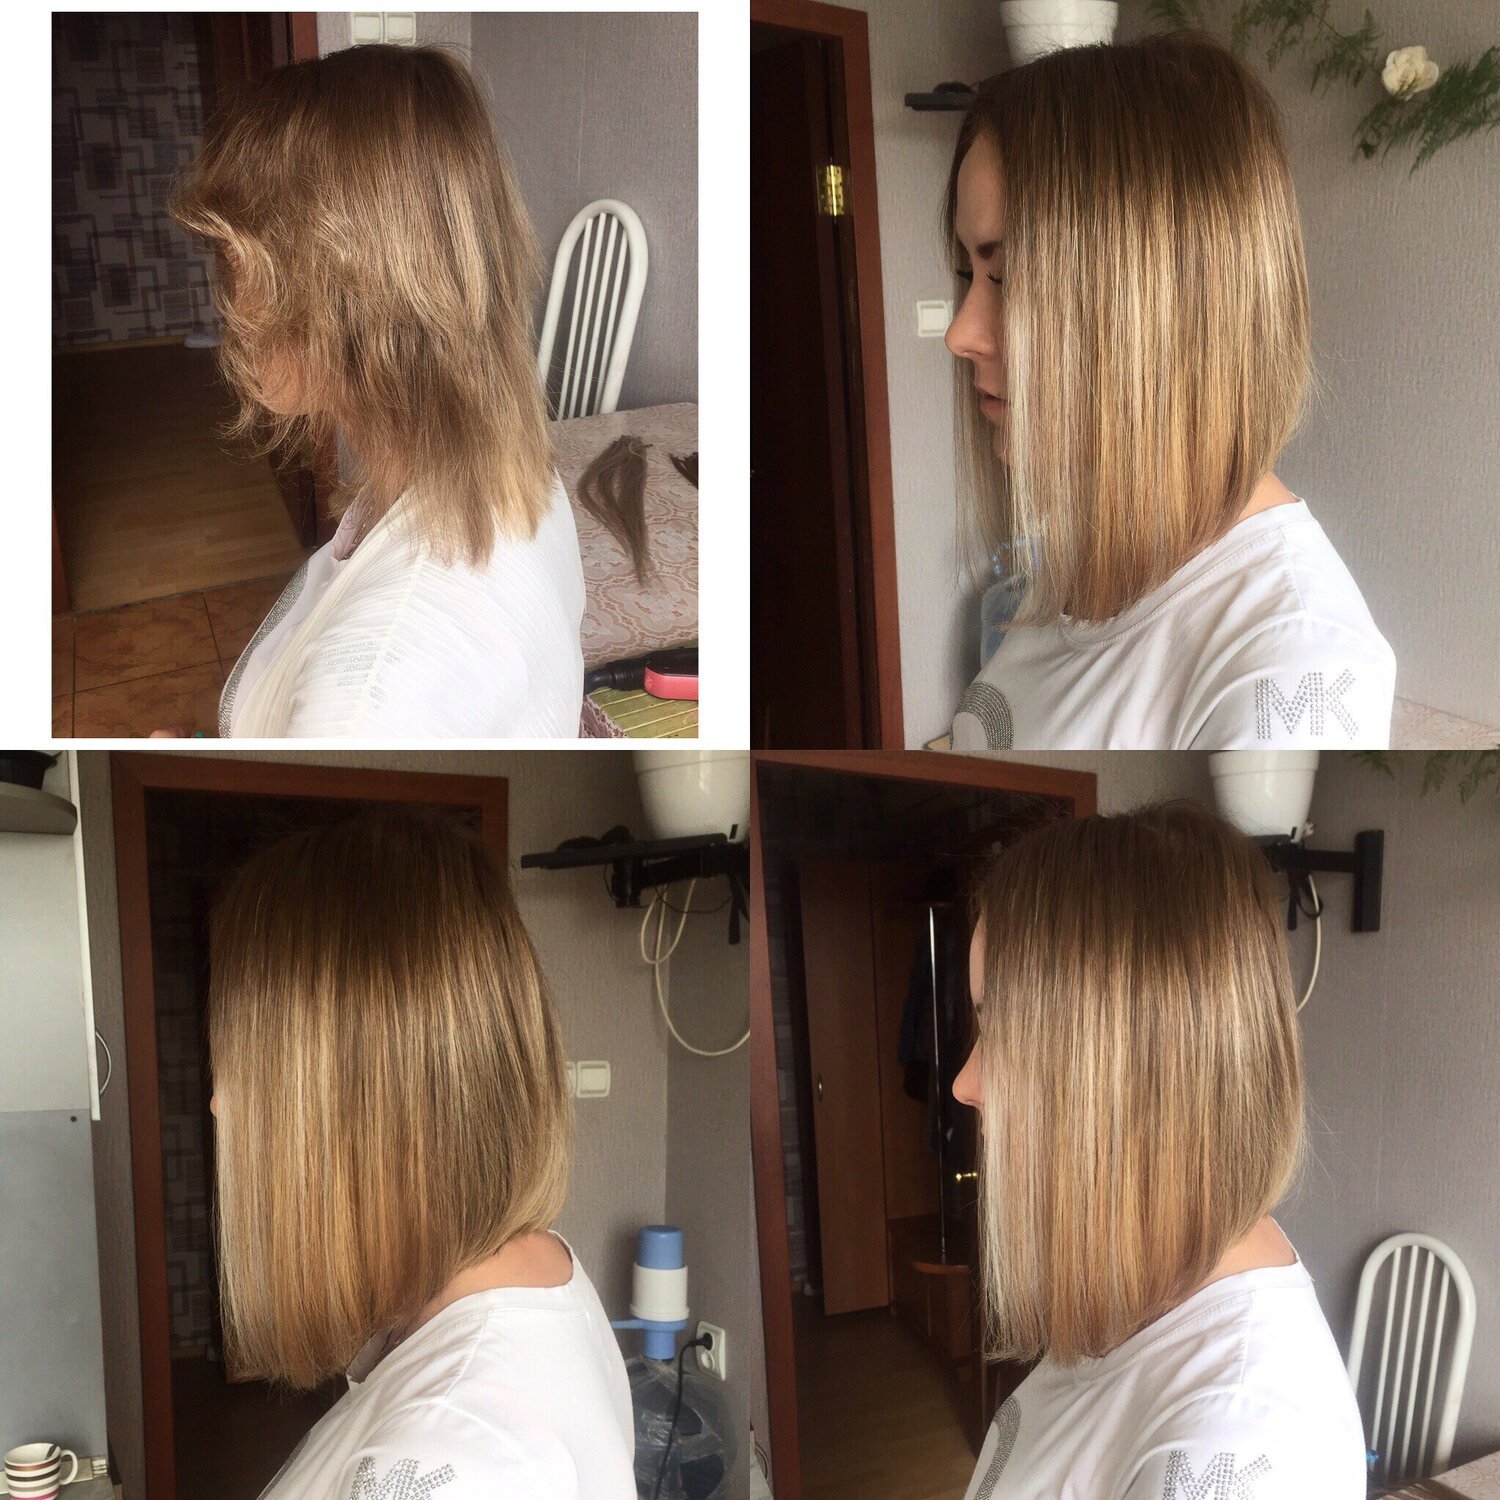 Нарощенные волосы на каре до и после фото